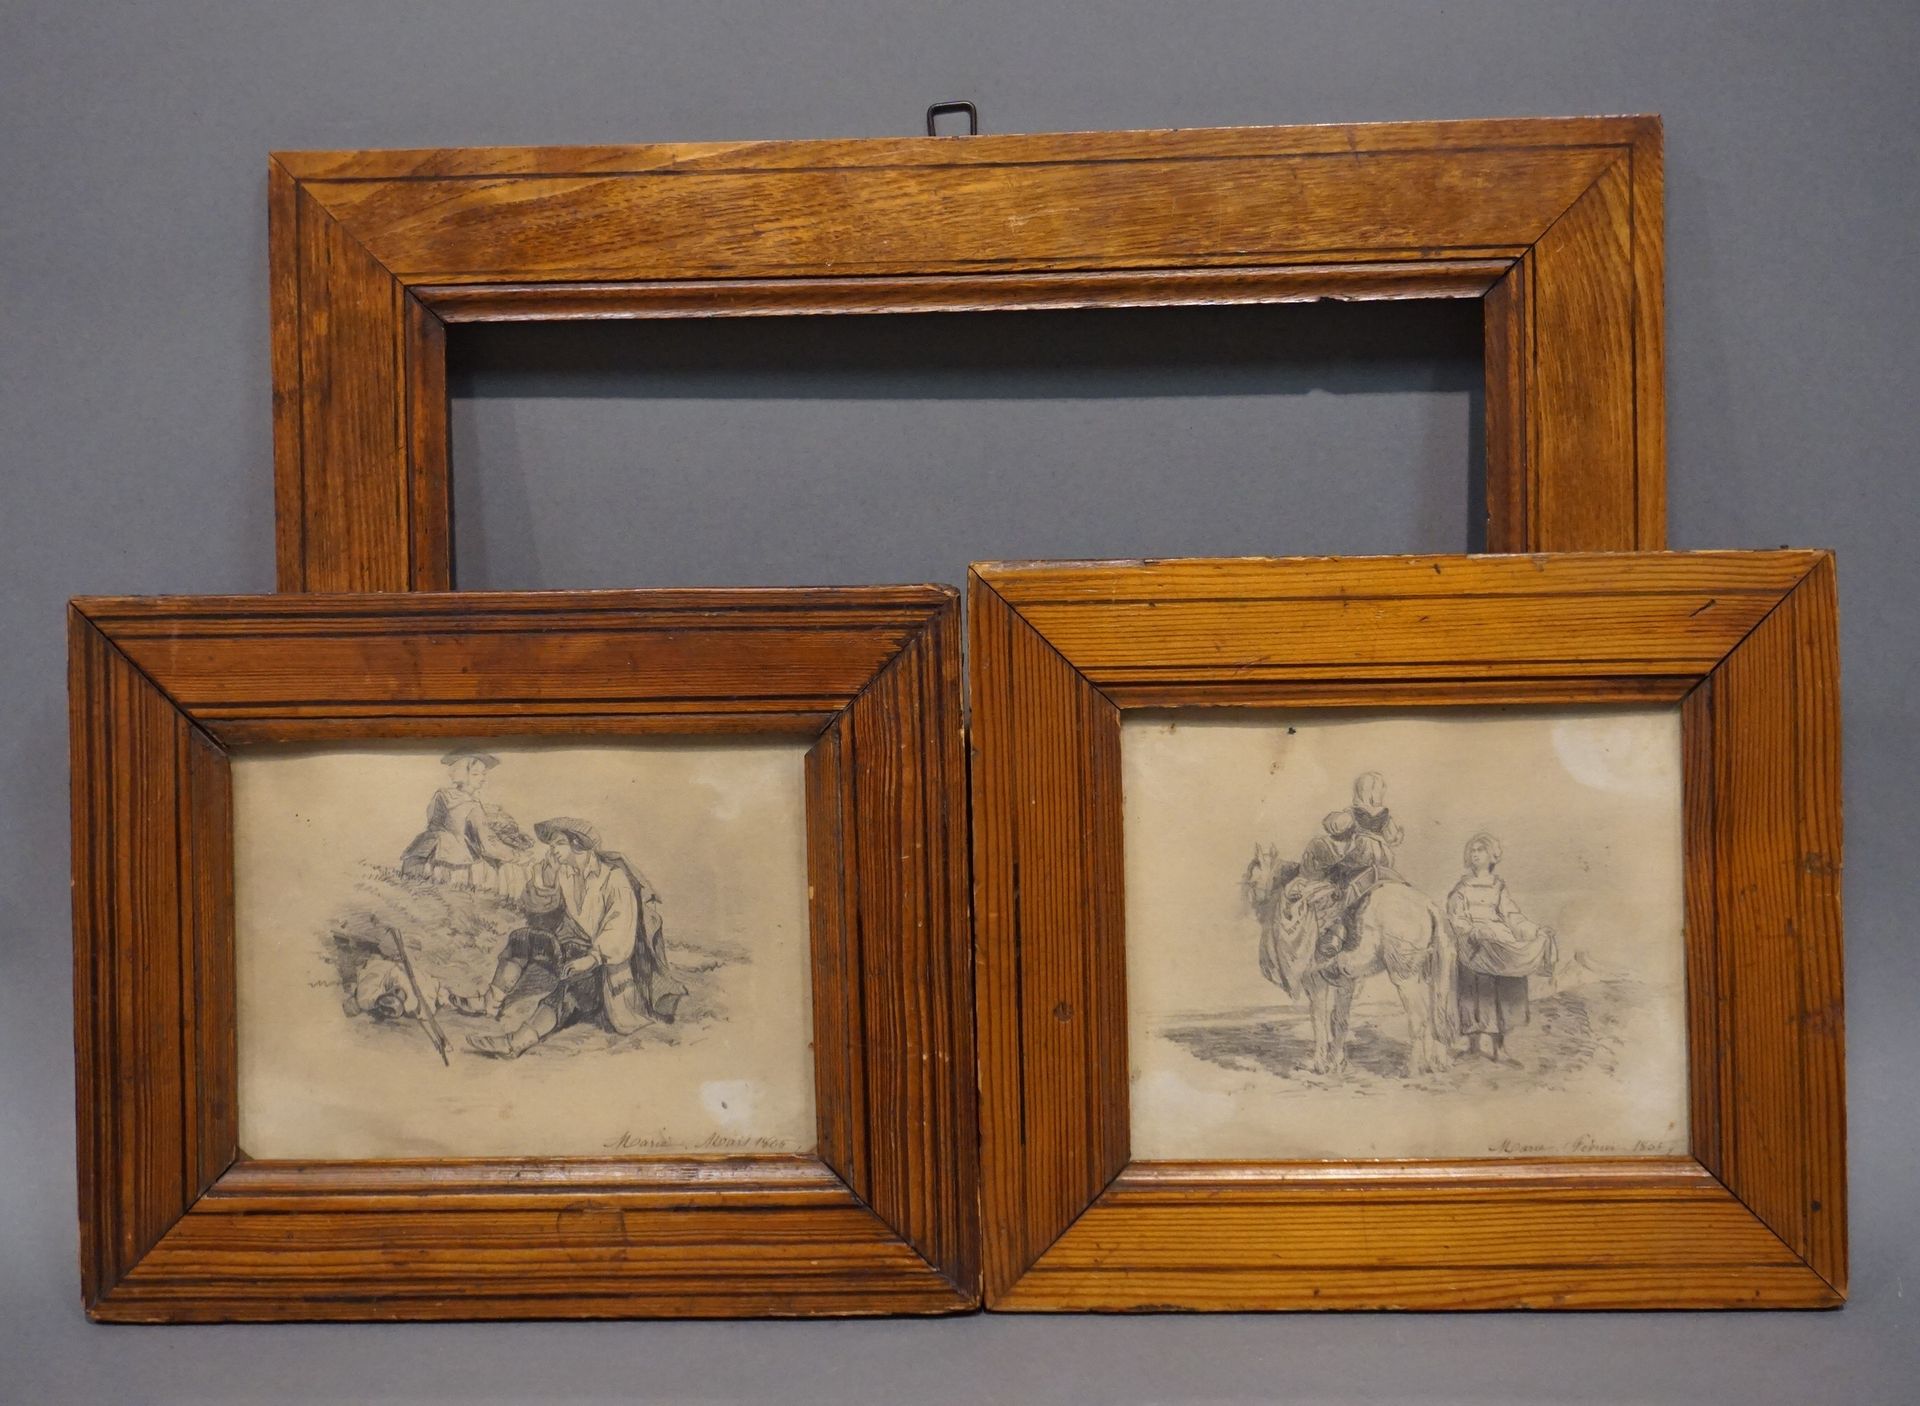 MARIE Due disegni: "Coppia" e "Cavaliere e contadina", sbd, datati 1865. 11x15 c&hellip;